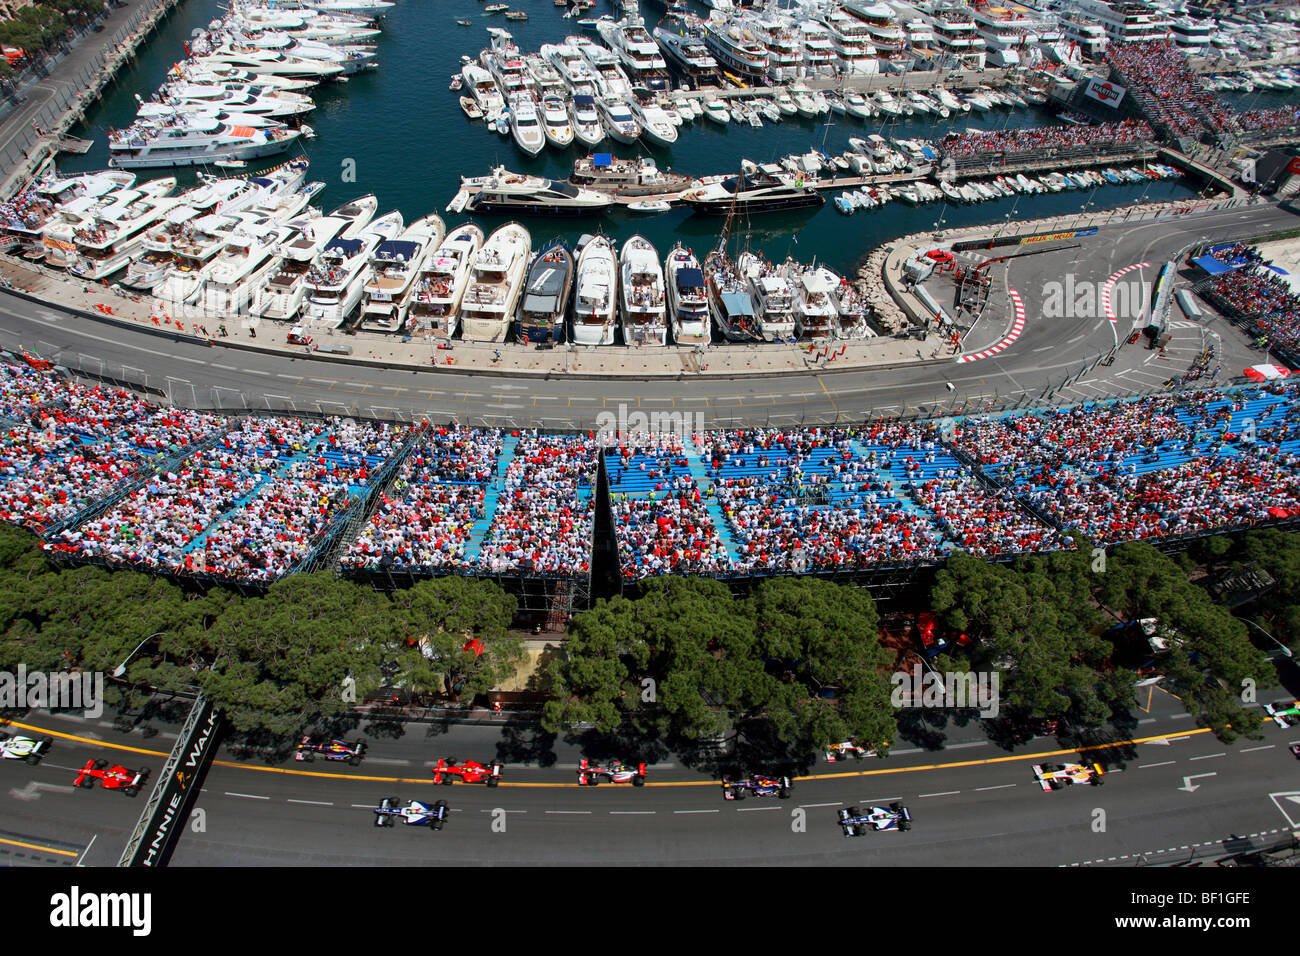 El estadio lleno y la marina durante el Grand Prix de Fórmula uno de Mónaco Foto de stock